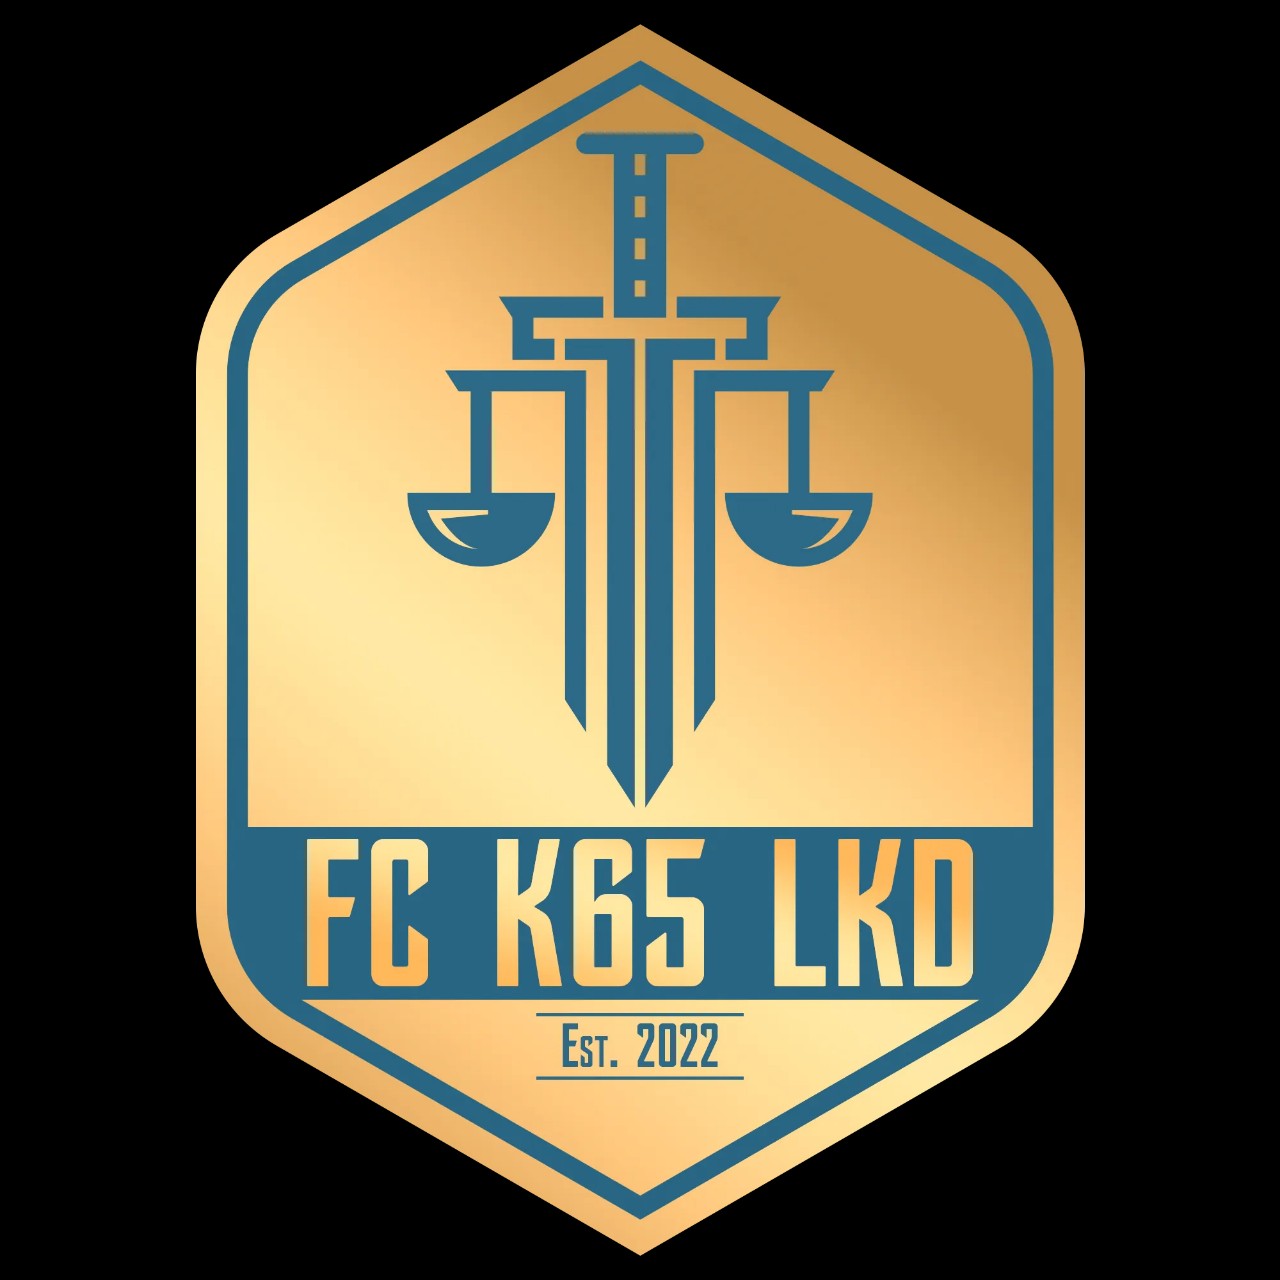 FC K65LKD